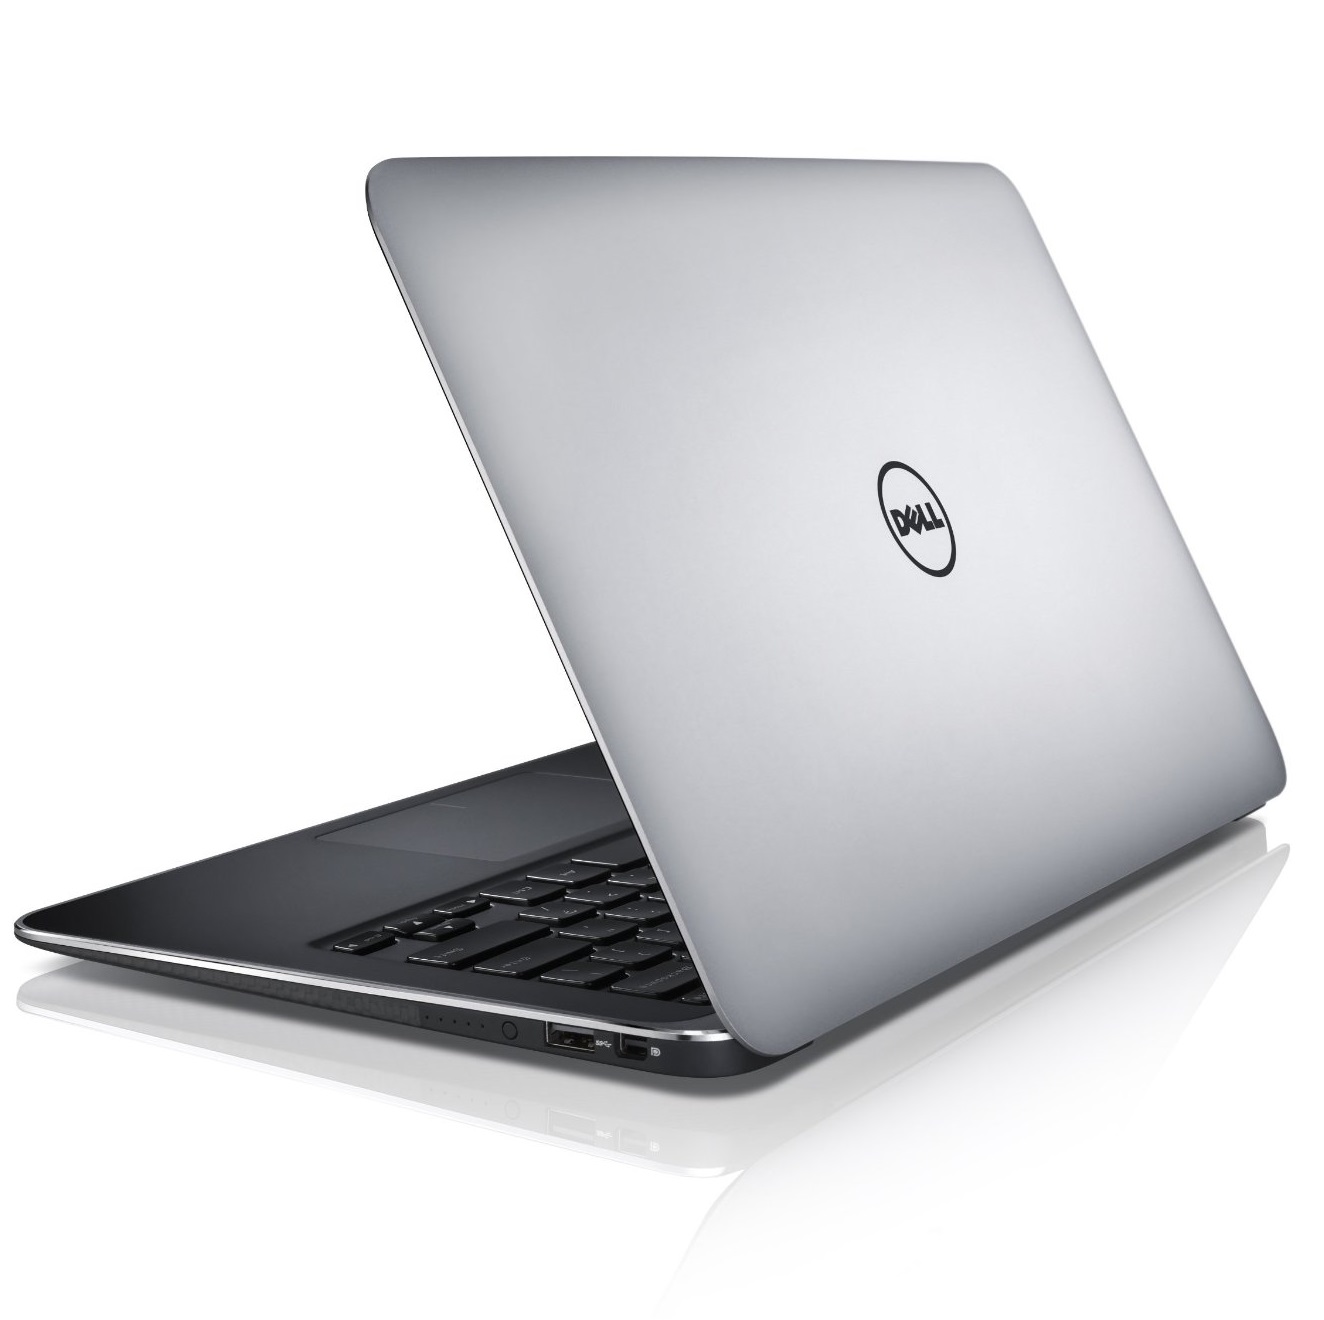 Laptop Dell XPS13 9350 6YJ60 (Silver) Mỏng, gọn, tinh tế và sang trọng